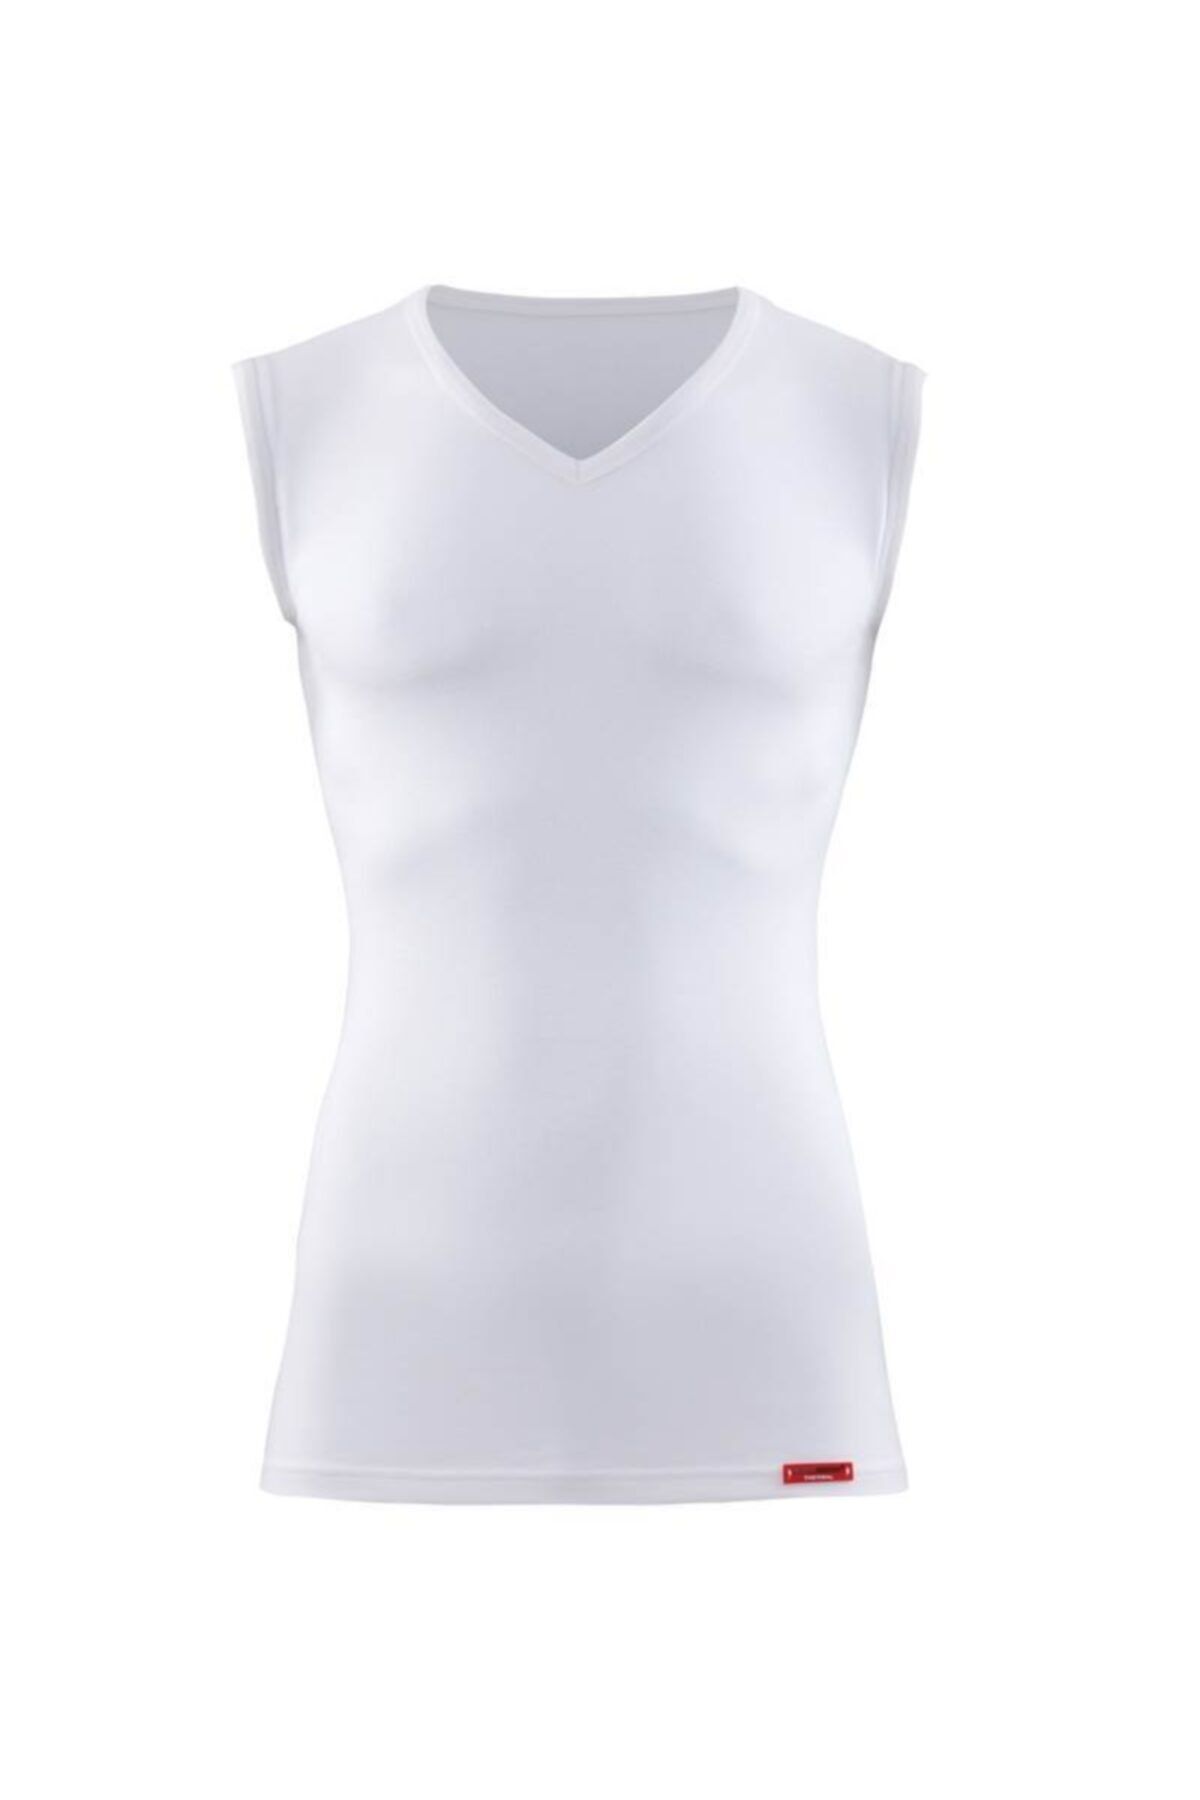 Blackspade Unisex Termal 2. Seviye T-shirt 9243-beyaz